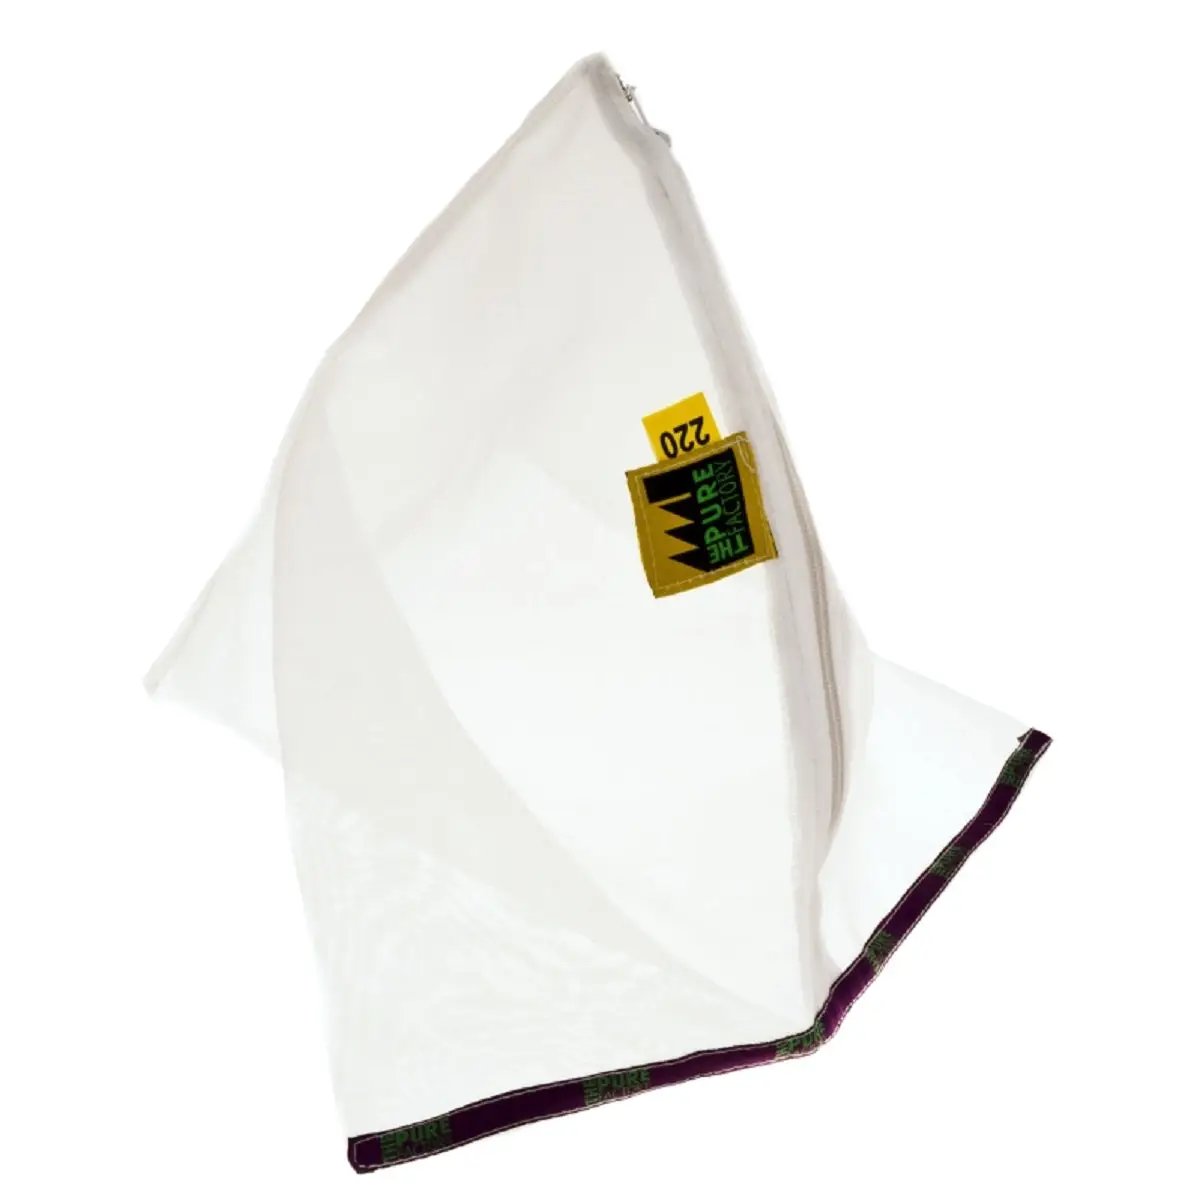 Le sac pyramidal pour les extractions de résine avec la mini machine à laver Secret Icer